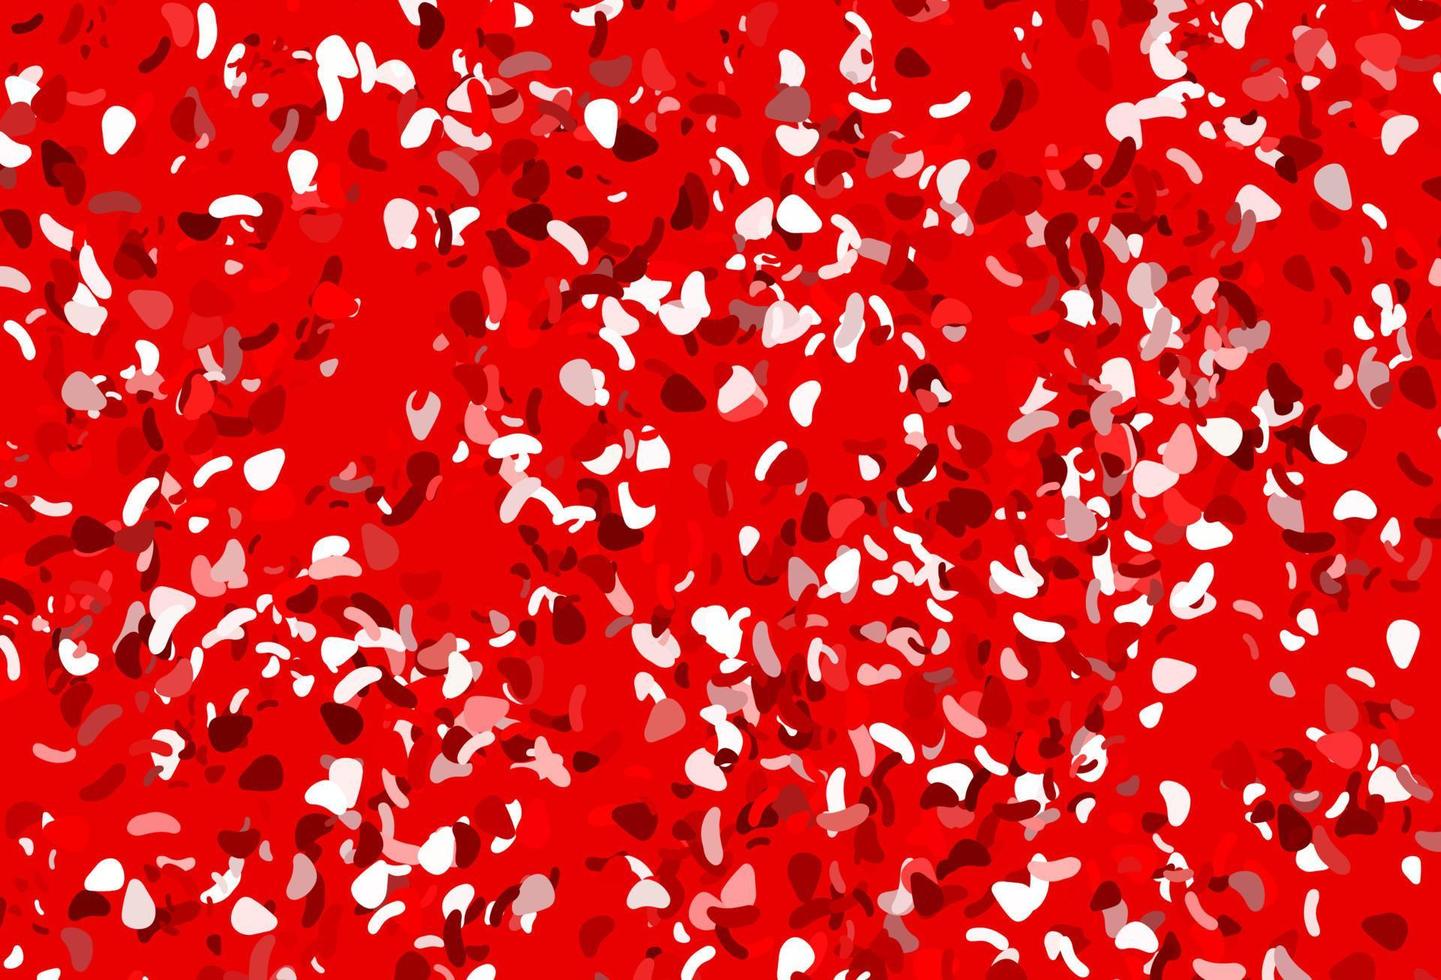 motif vectoriel rouge clair avec des formes chaotiques.